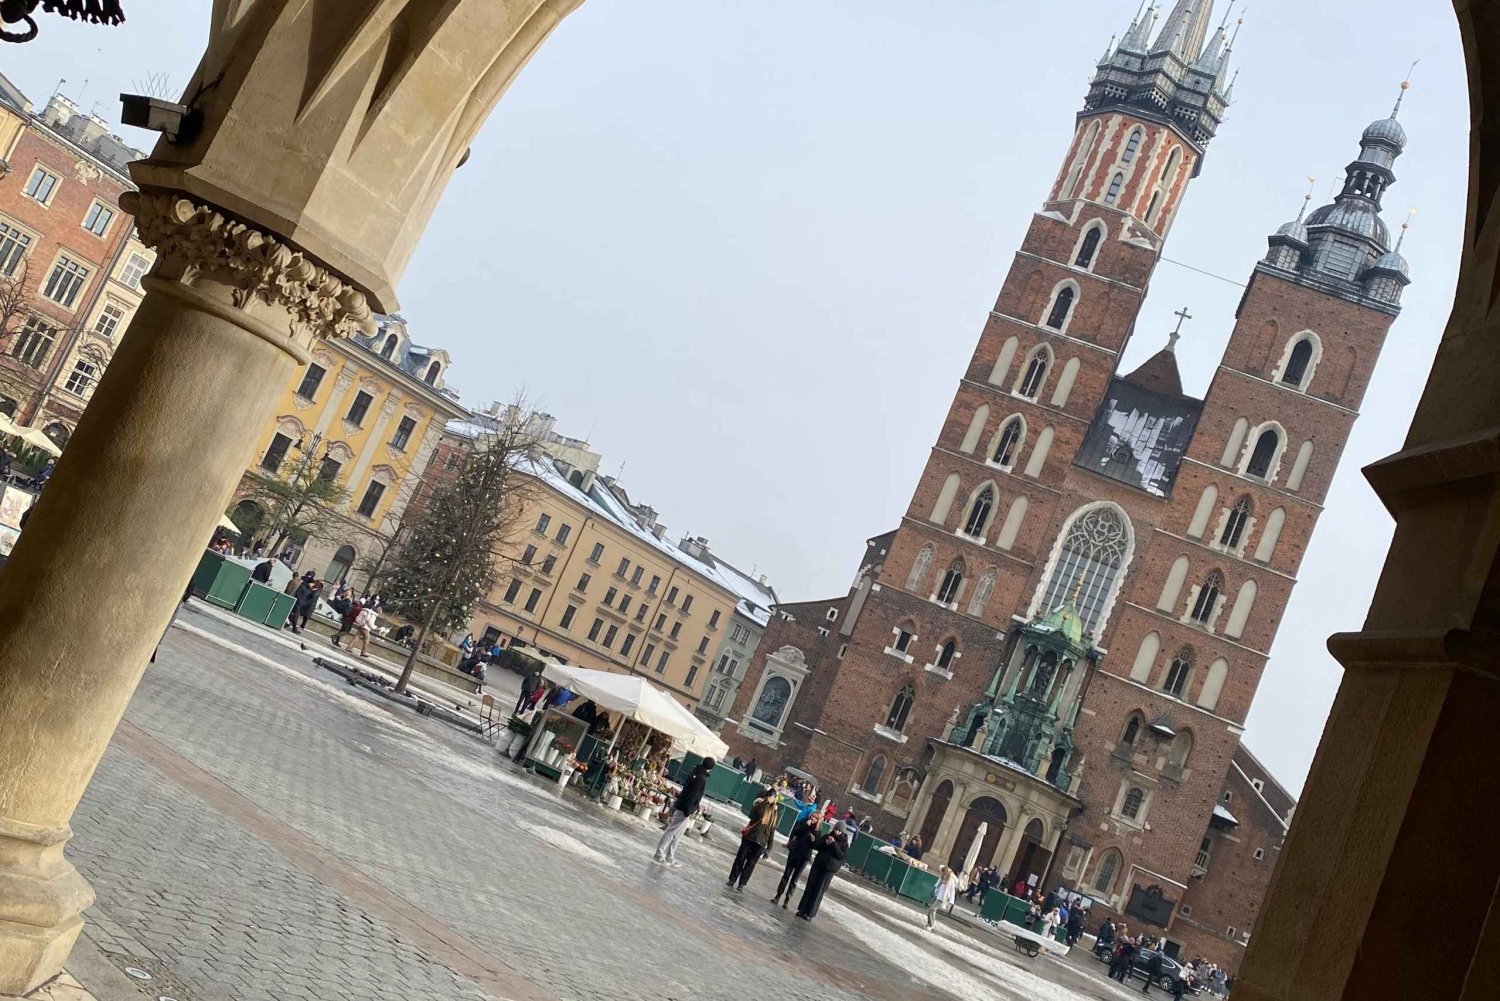 Kraków in a nutshell - walking tour